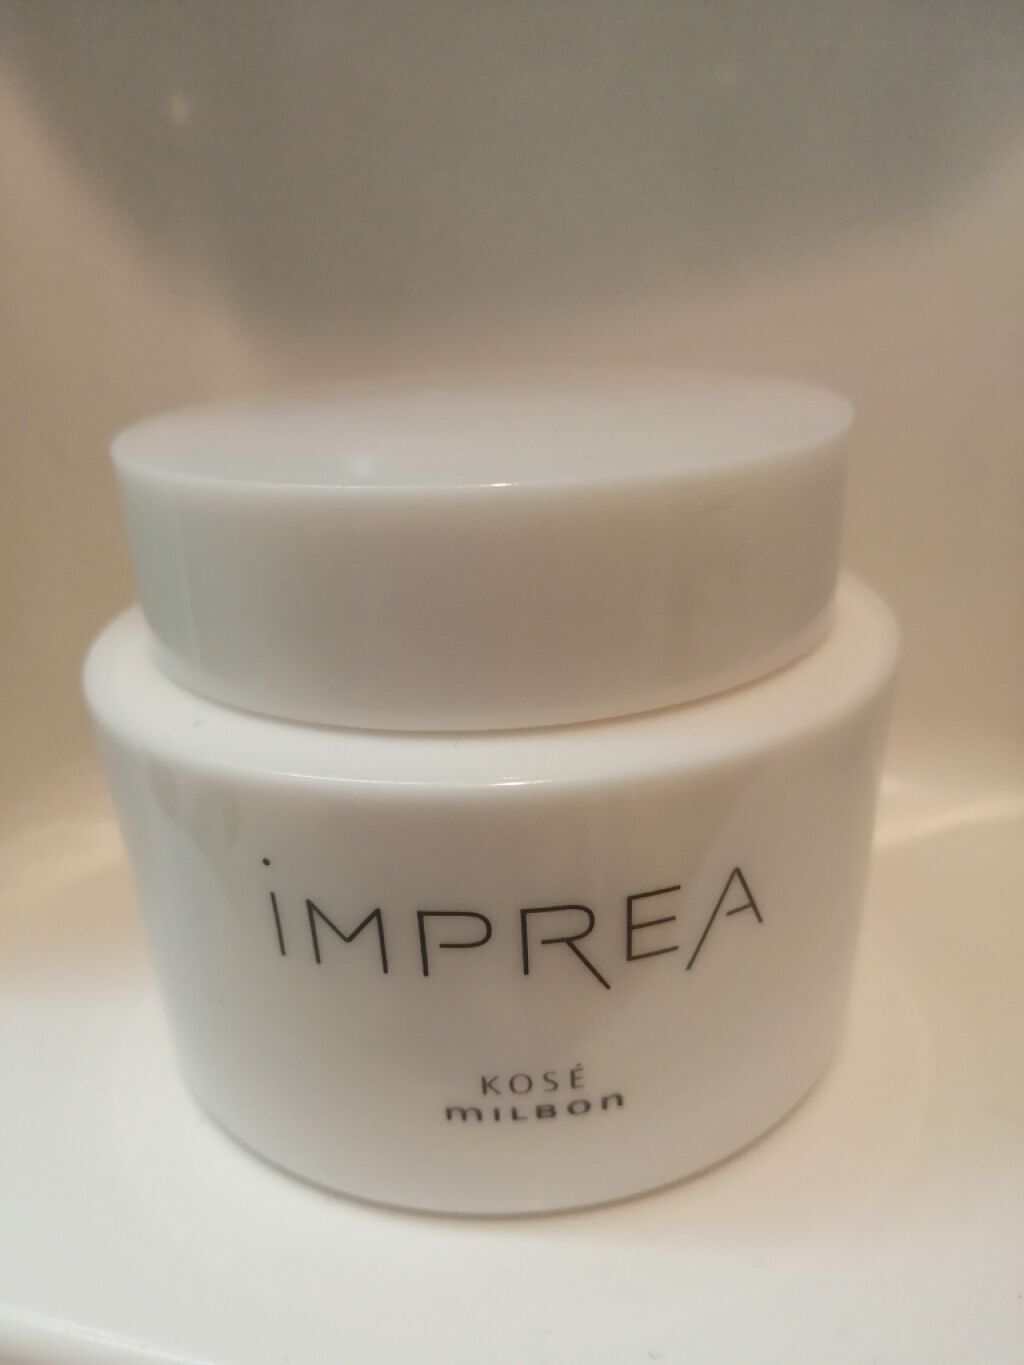 インプレア(iMPREA)のスキンケア・基礎化粧品7選 | 人気商品から新作 